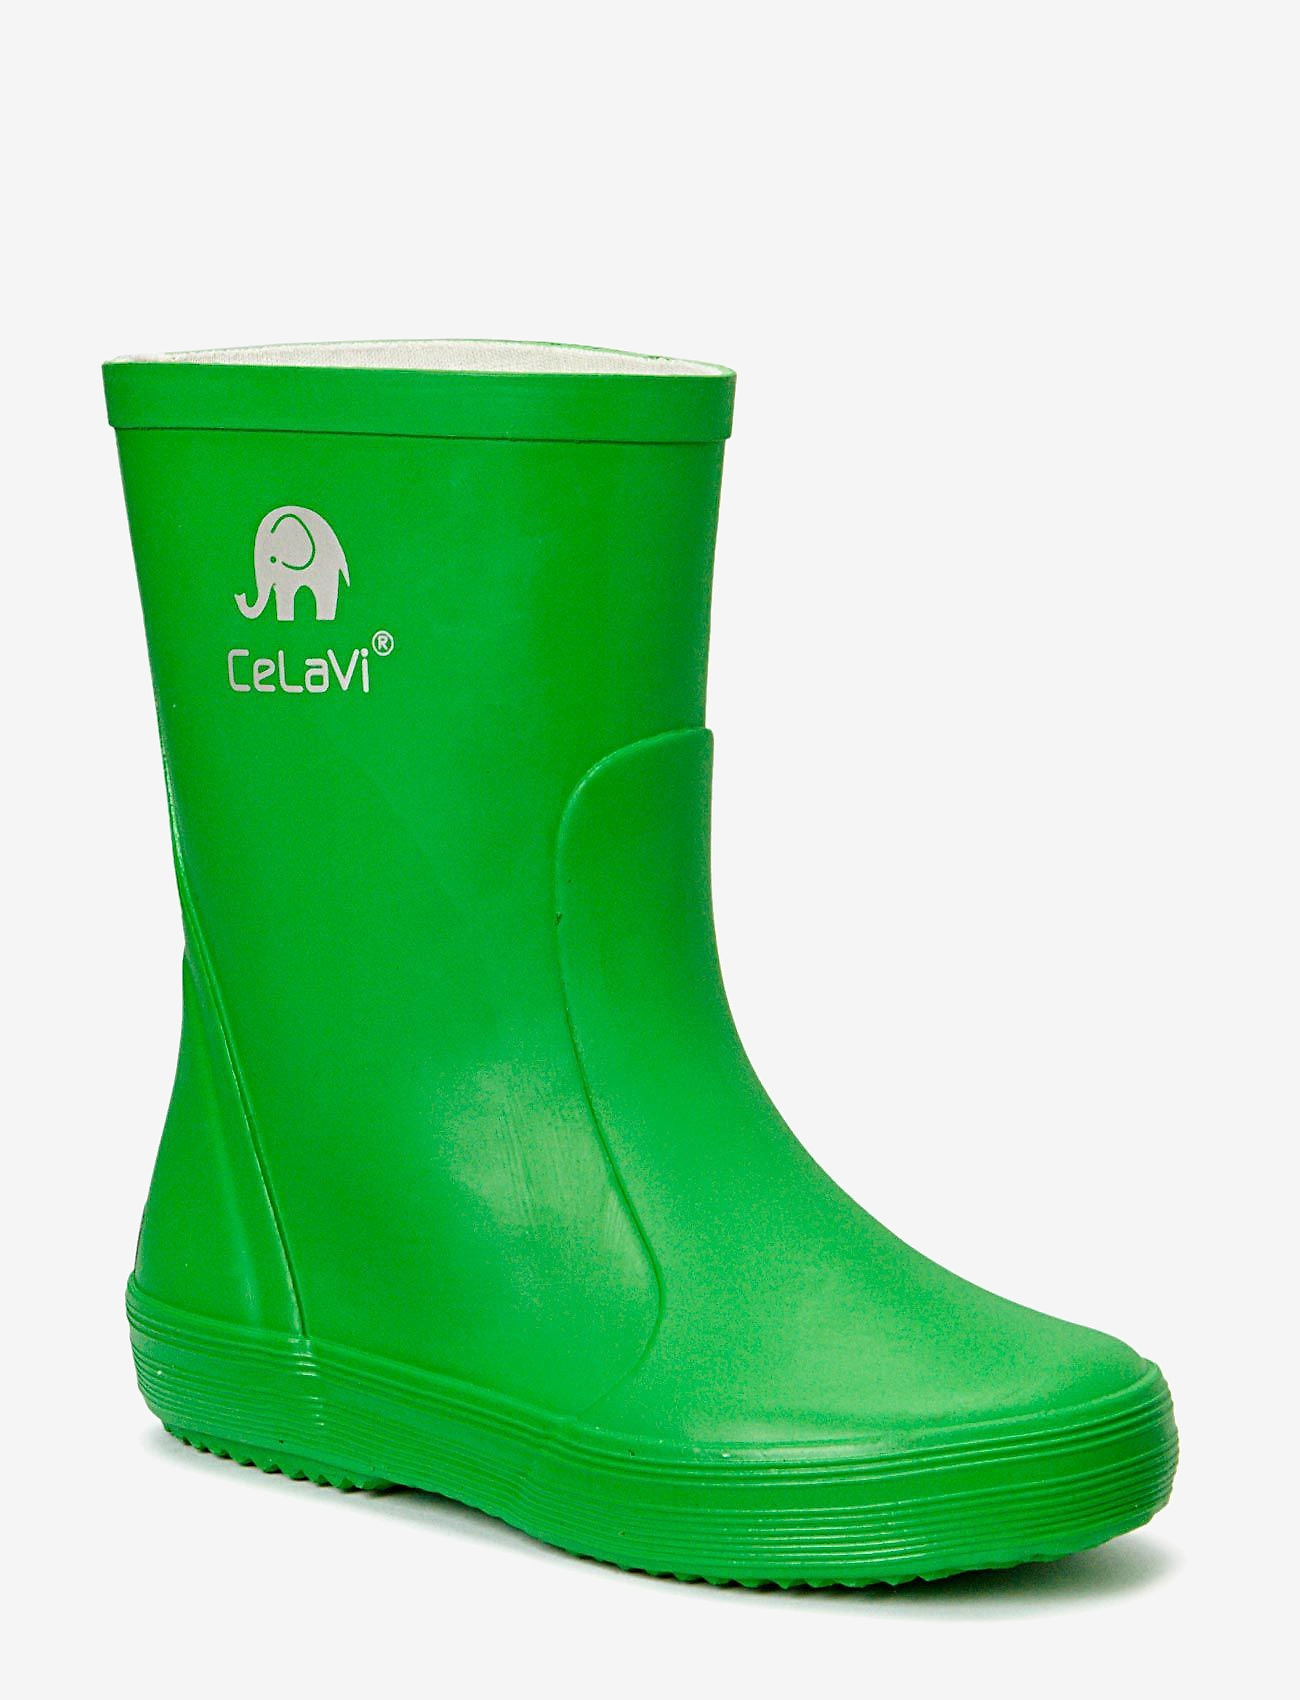 CeLaVi - Basic wellies -solid - gummistøvler uden for - green - 0